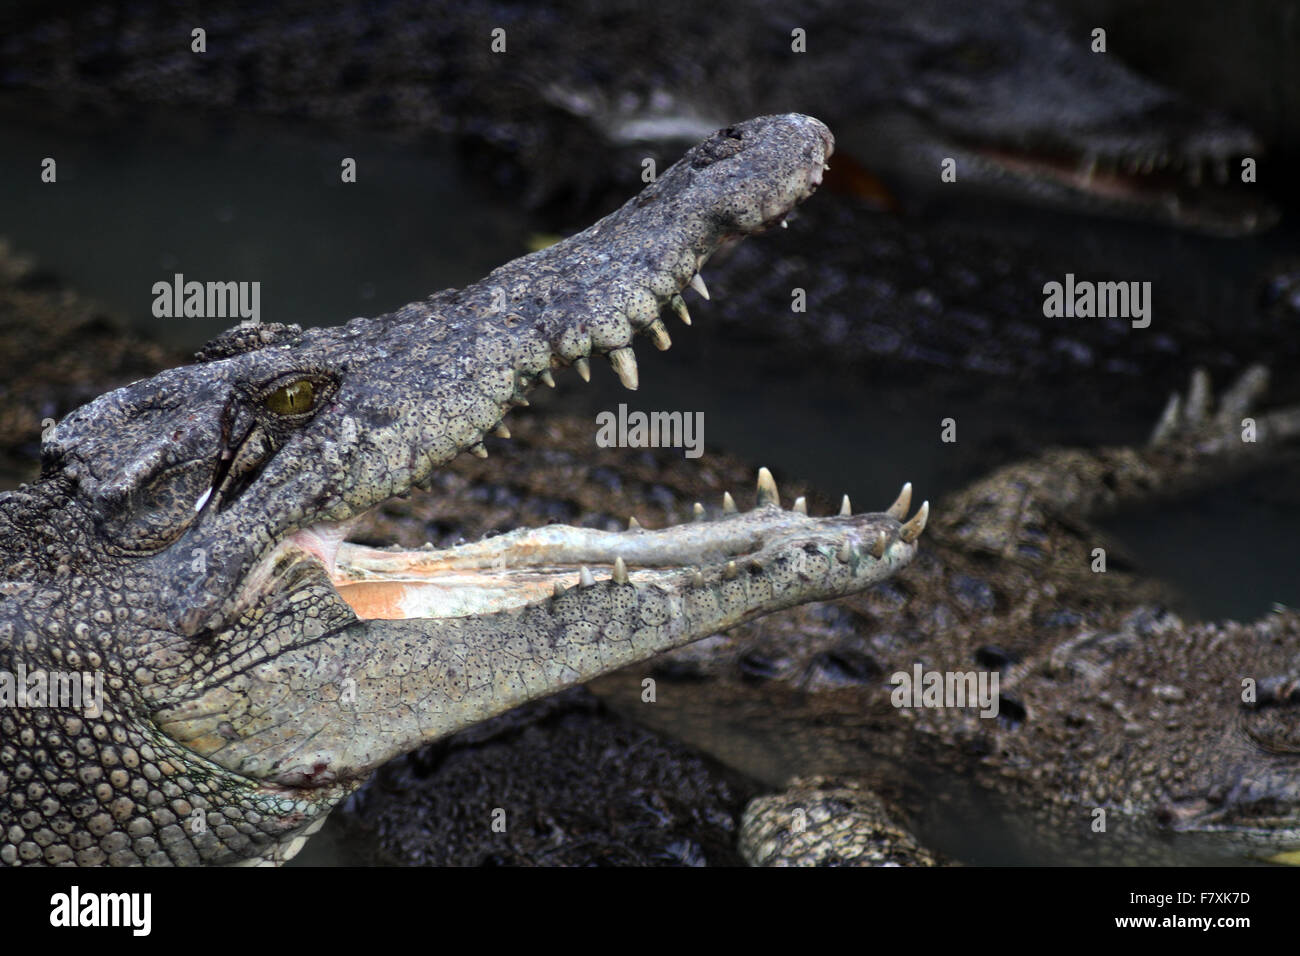 Medan, Nord de Sumatra, en Indonésie. 19Th Mar, 2015. Les crocodiles se rassemblent au moment de l'alimentation à la ferme aux crocodiles. La ville de Medan est un centre d'élevage qui détient plus de 2 800 crocodiles, qui sont aussi les plus grands de l'habitat des crocodiles dans le monde. Le mois dernier, les ministres de l'Indonésie a annoncé des plans pour les crocodiles, tigres et du Pirahna pour garder les détenus dans le pays, afin de les empêcher de s'échapper. © Ivan Damanik/Alamy Live News Banque D'Images